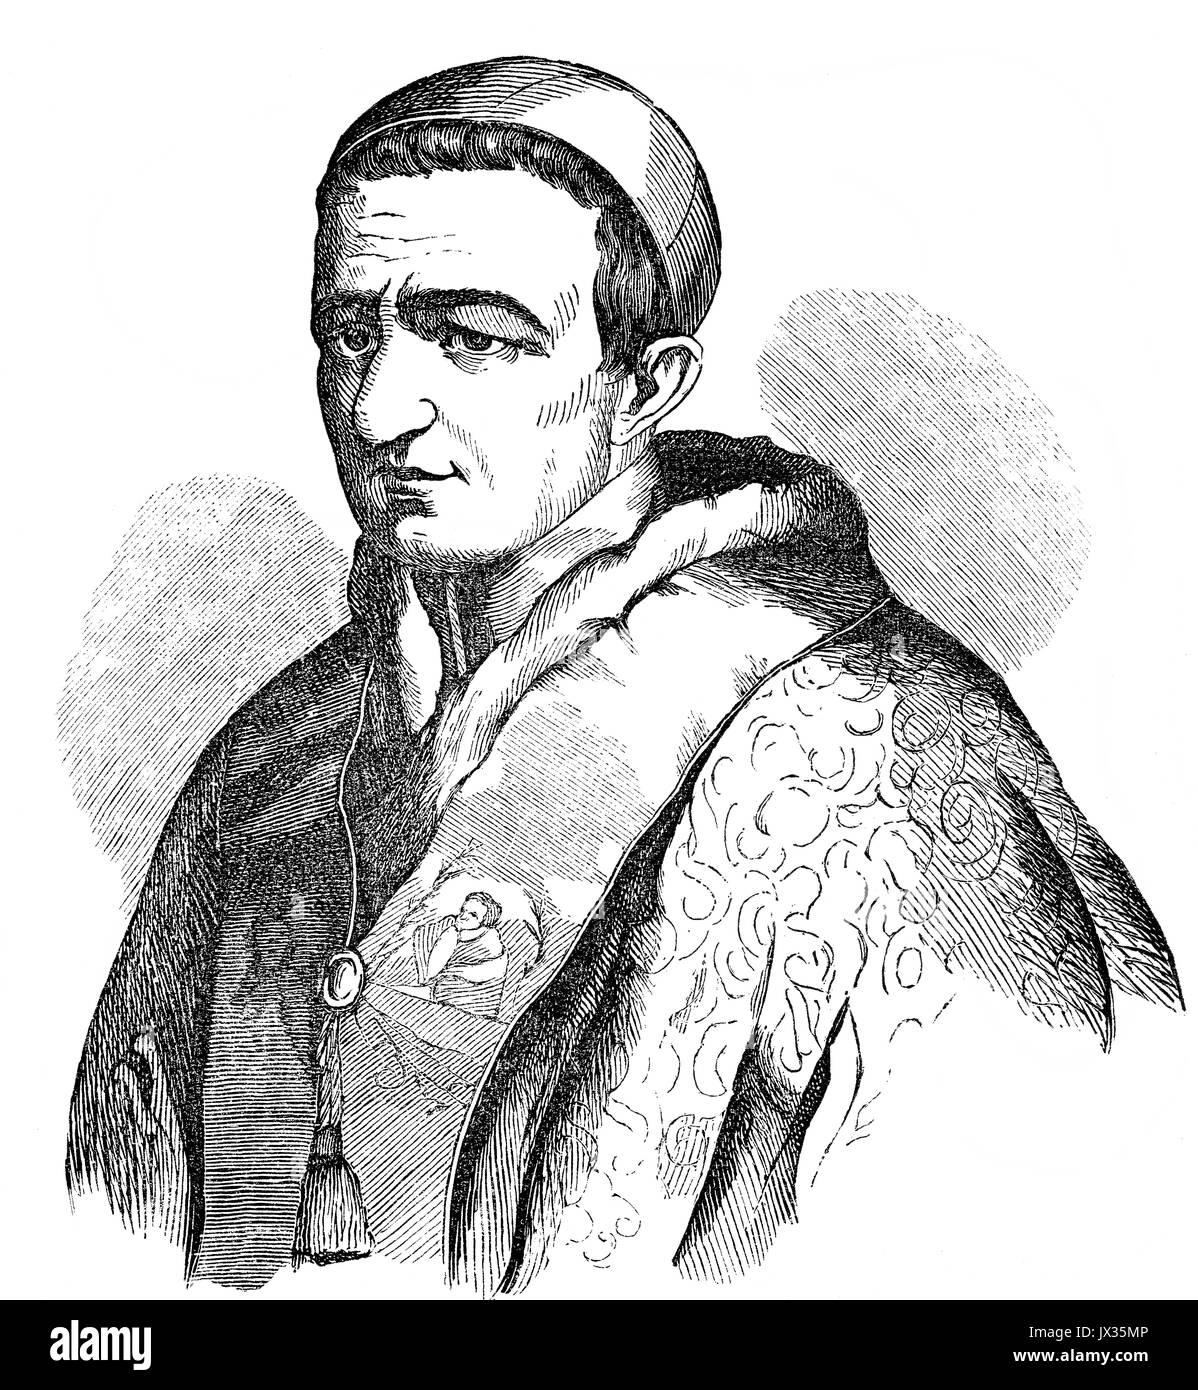 Papa Gregorio XVI, 18 settembre 1765 - 1 giugno 1846, aveva regnato come Papa dal 2 febbraio 1831 alla sua morte Foto Stock